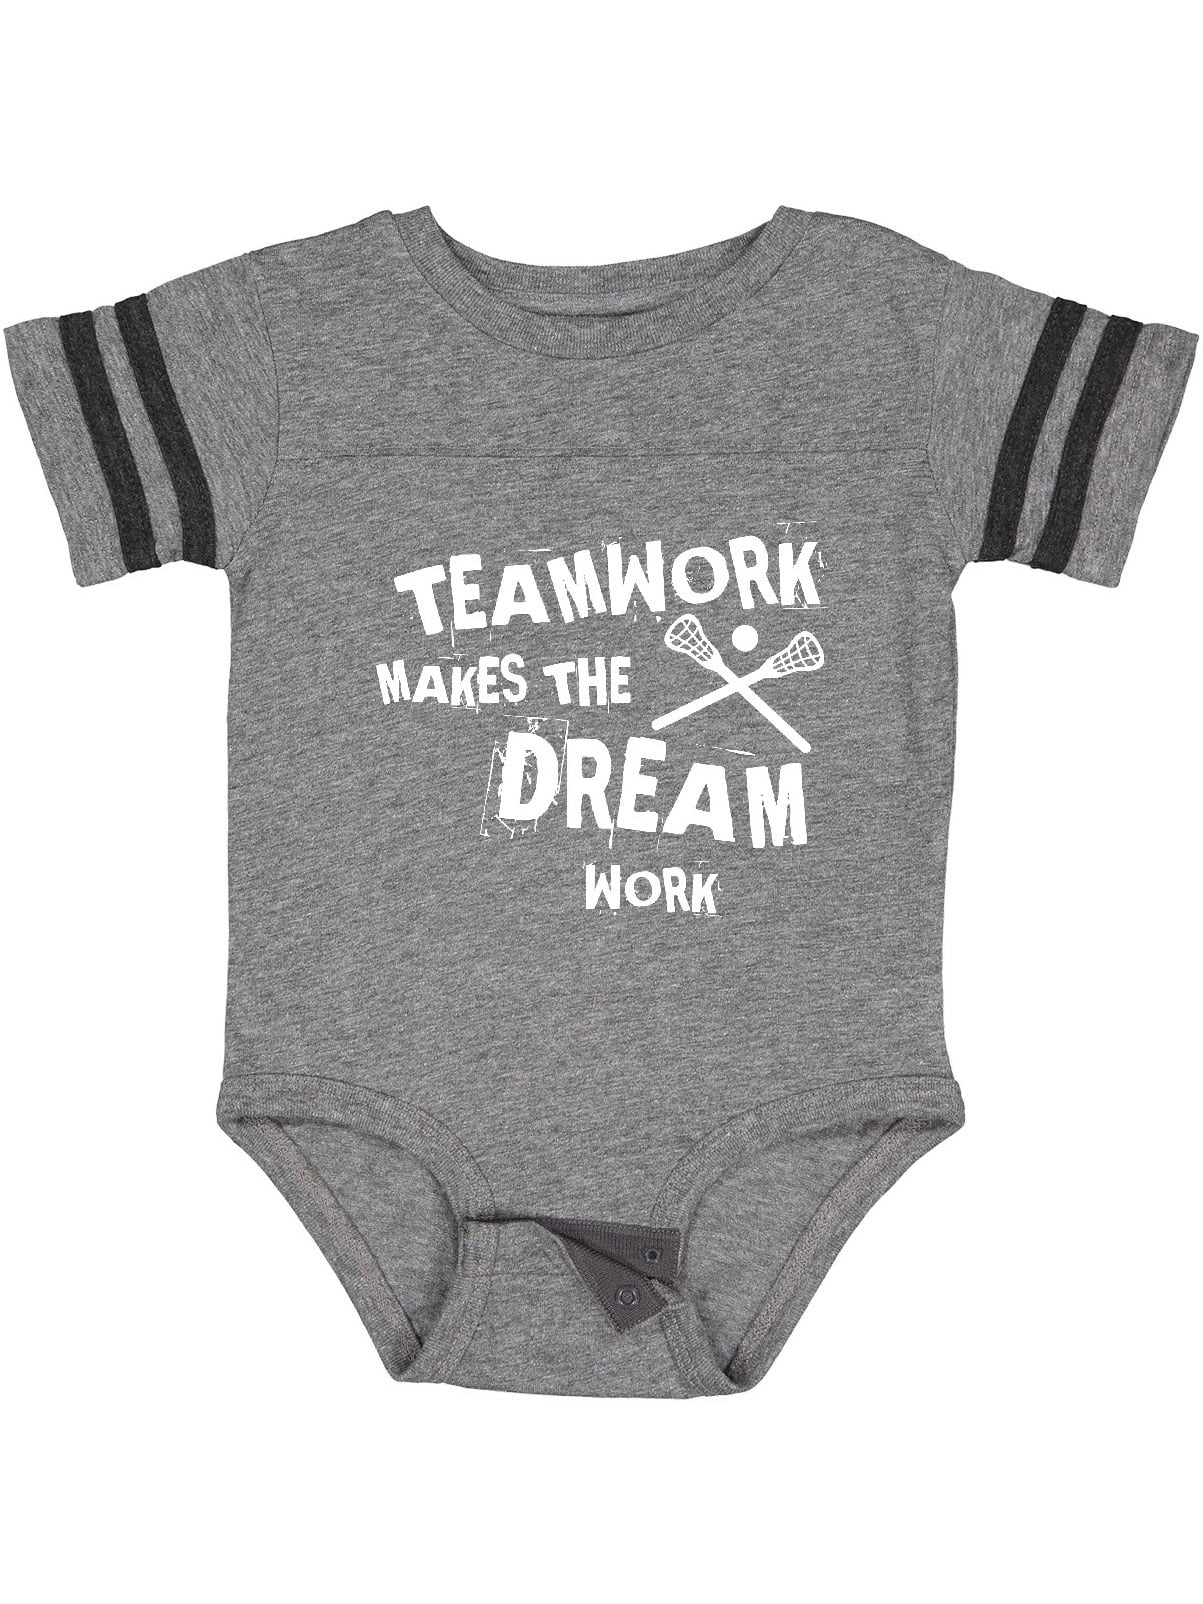 Lacrosse American Flag Newborn Infant Toddler Baby Girls Boys Bodysuit Short Sleeve 0-24 MonthsBlack 